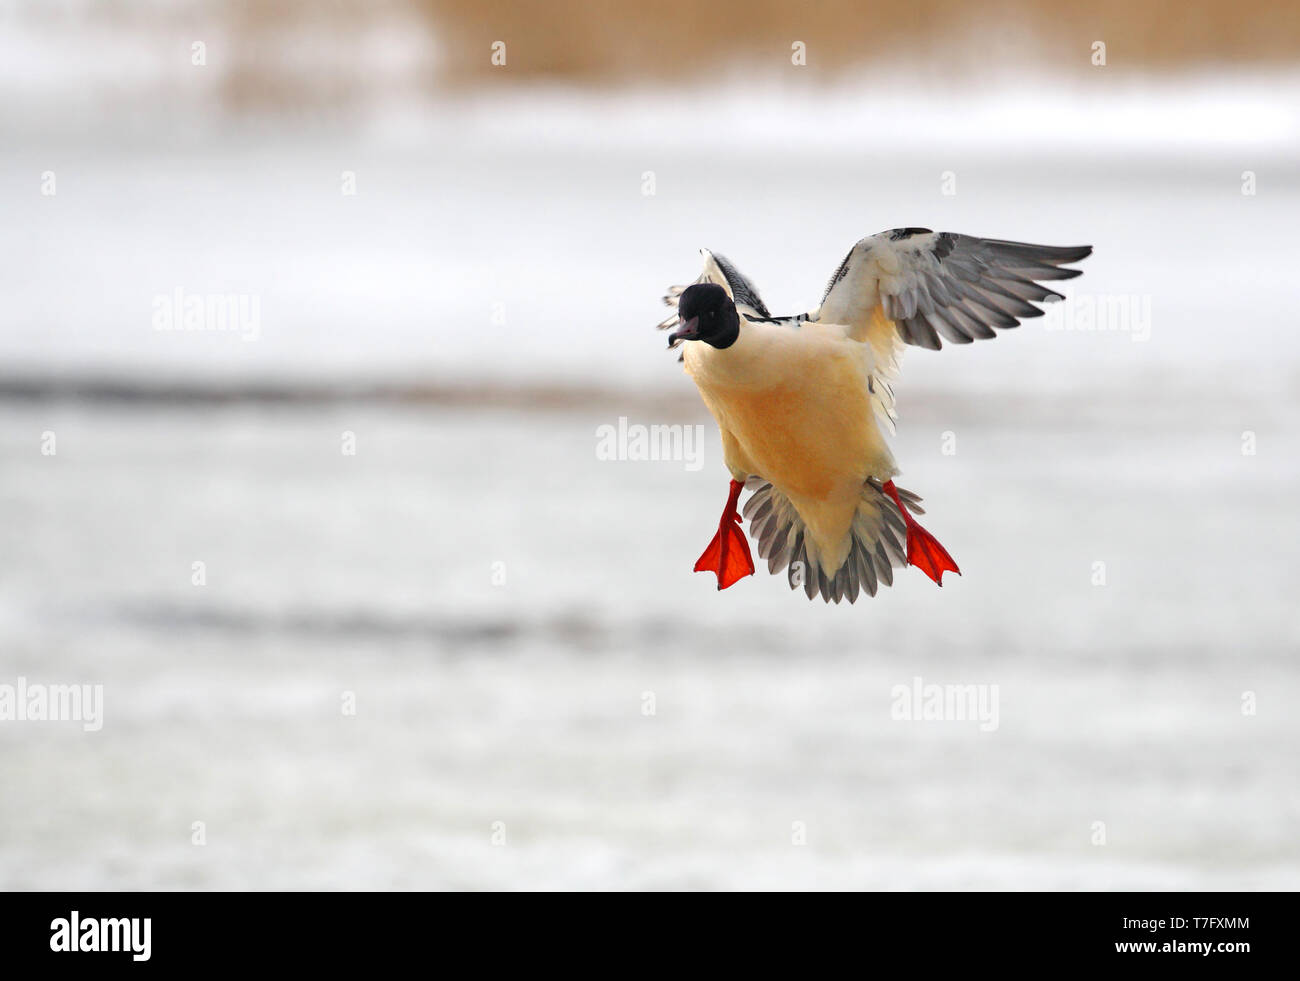 Goosander, Mergus merganser, adult male landing in winter setting at Gentofte Sø in Denmark. Stock Photo